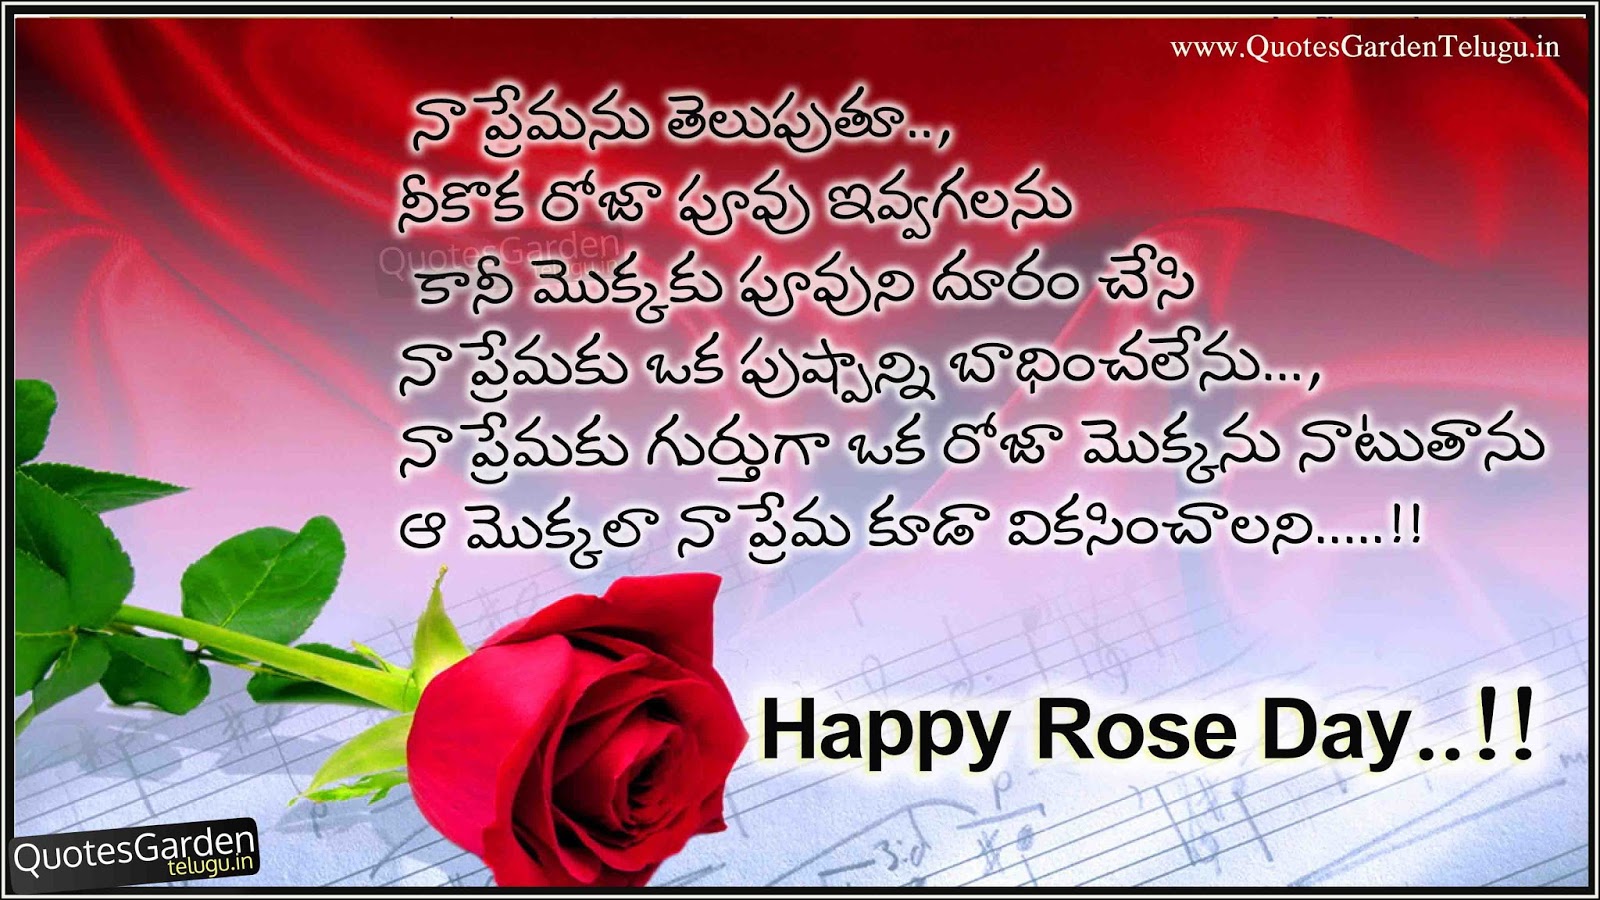 Happy Rose Day Quotes in telugu